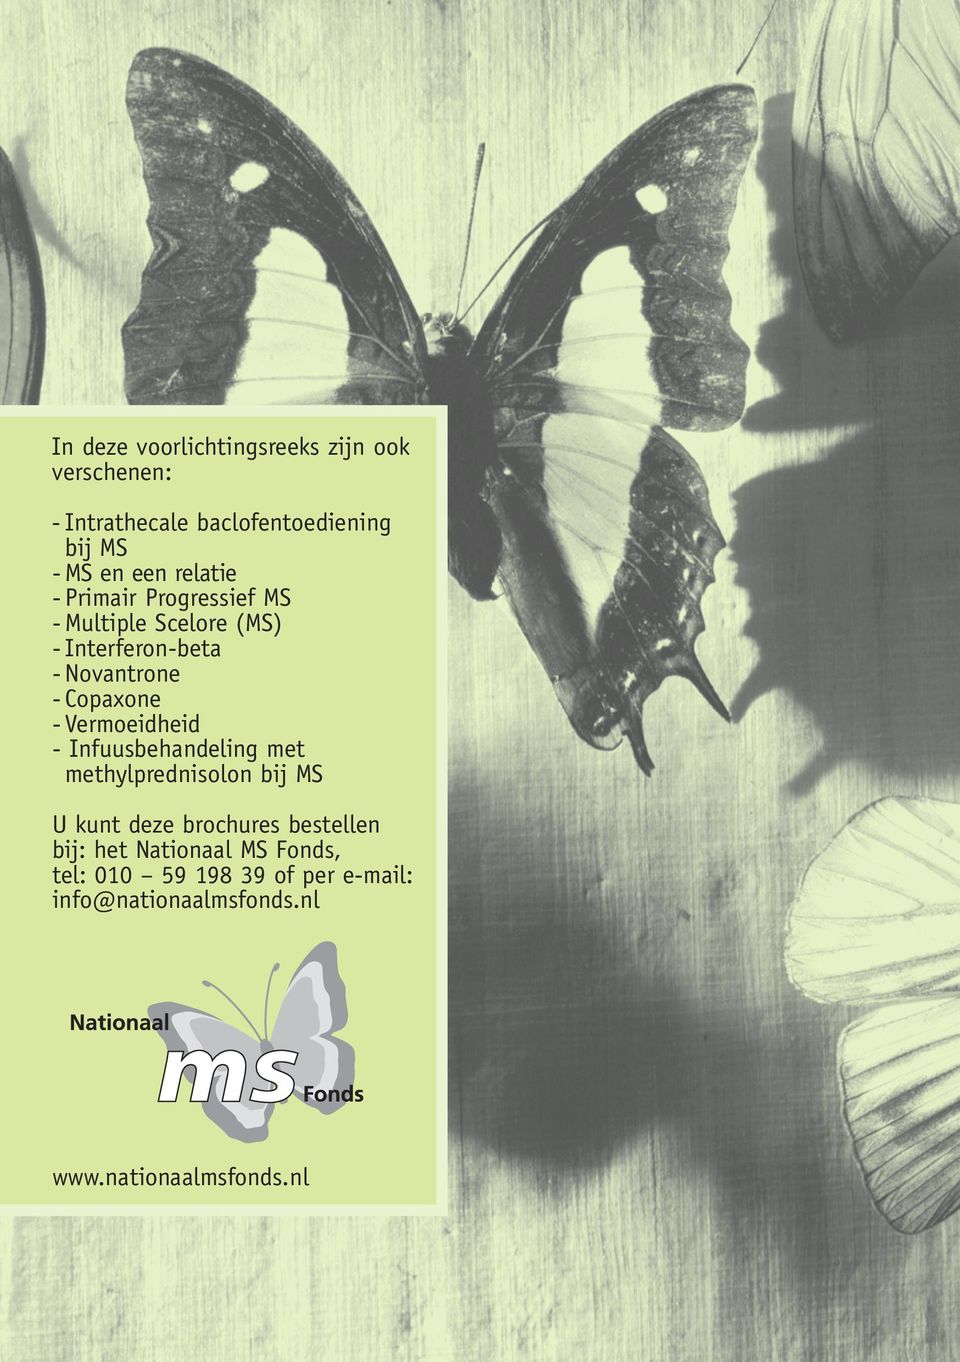 Vermoeidheid - Infuusbehandeling met methylprednisolon bij MS U kunt deze brochures bestellen bij: